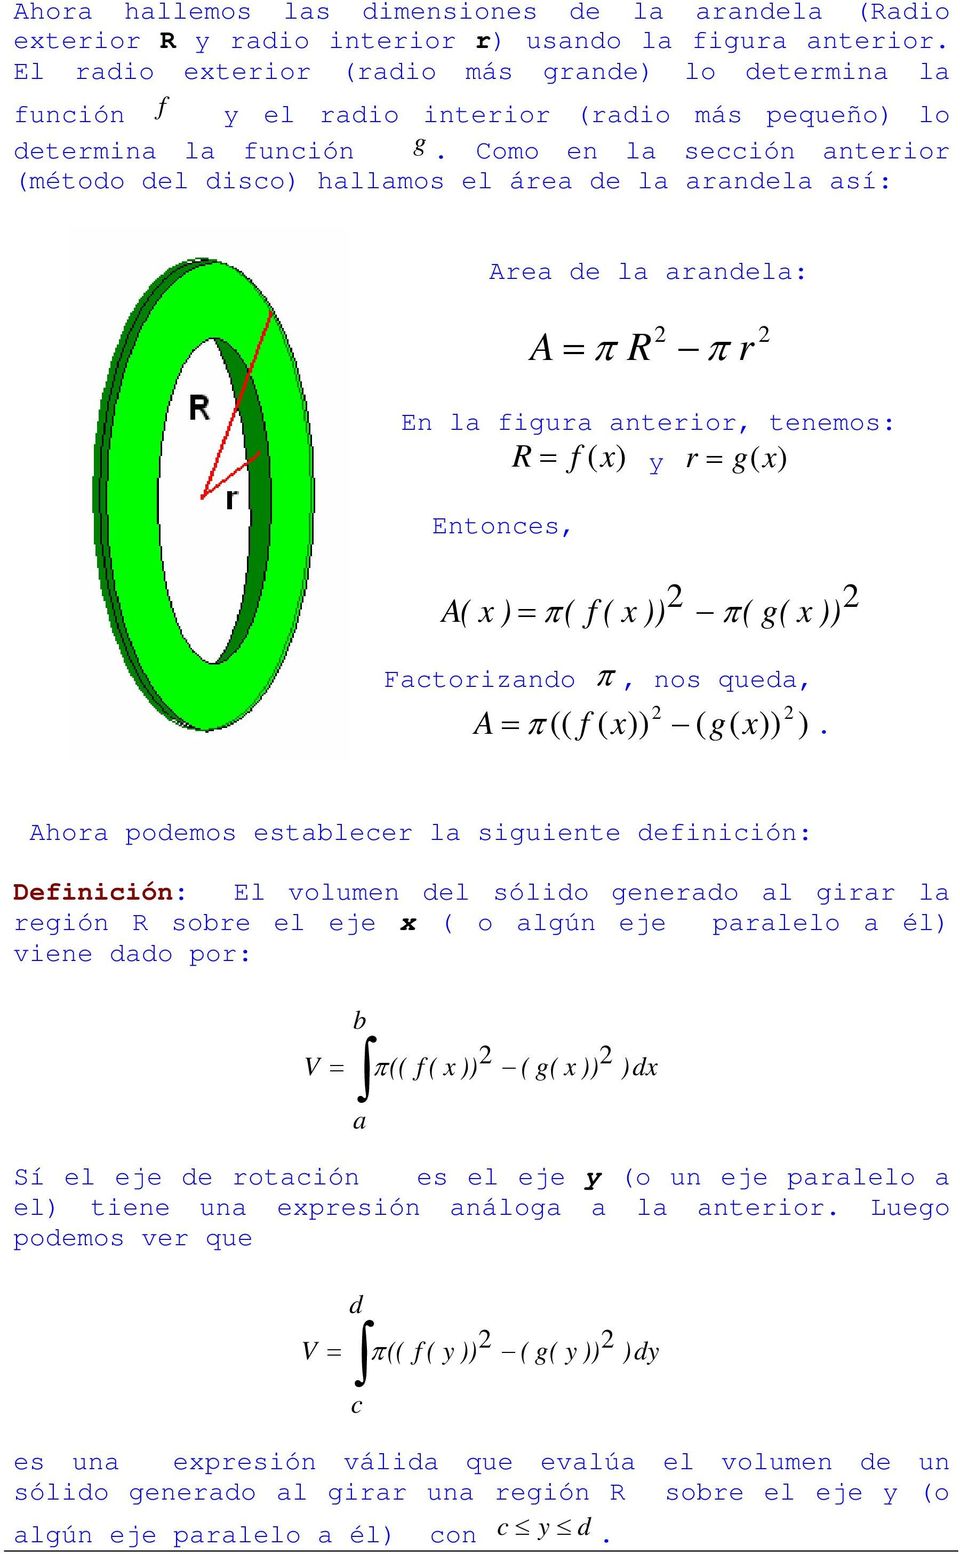 Como en la sección anterior (método del disco) hallamos el área de la arandela así: Area de la arandela: A = π R π r En la figura anterior, tenemos: Entonces, R = f () y r = g() A( ) = π( f ( )) π(